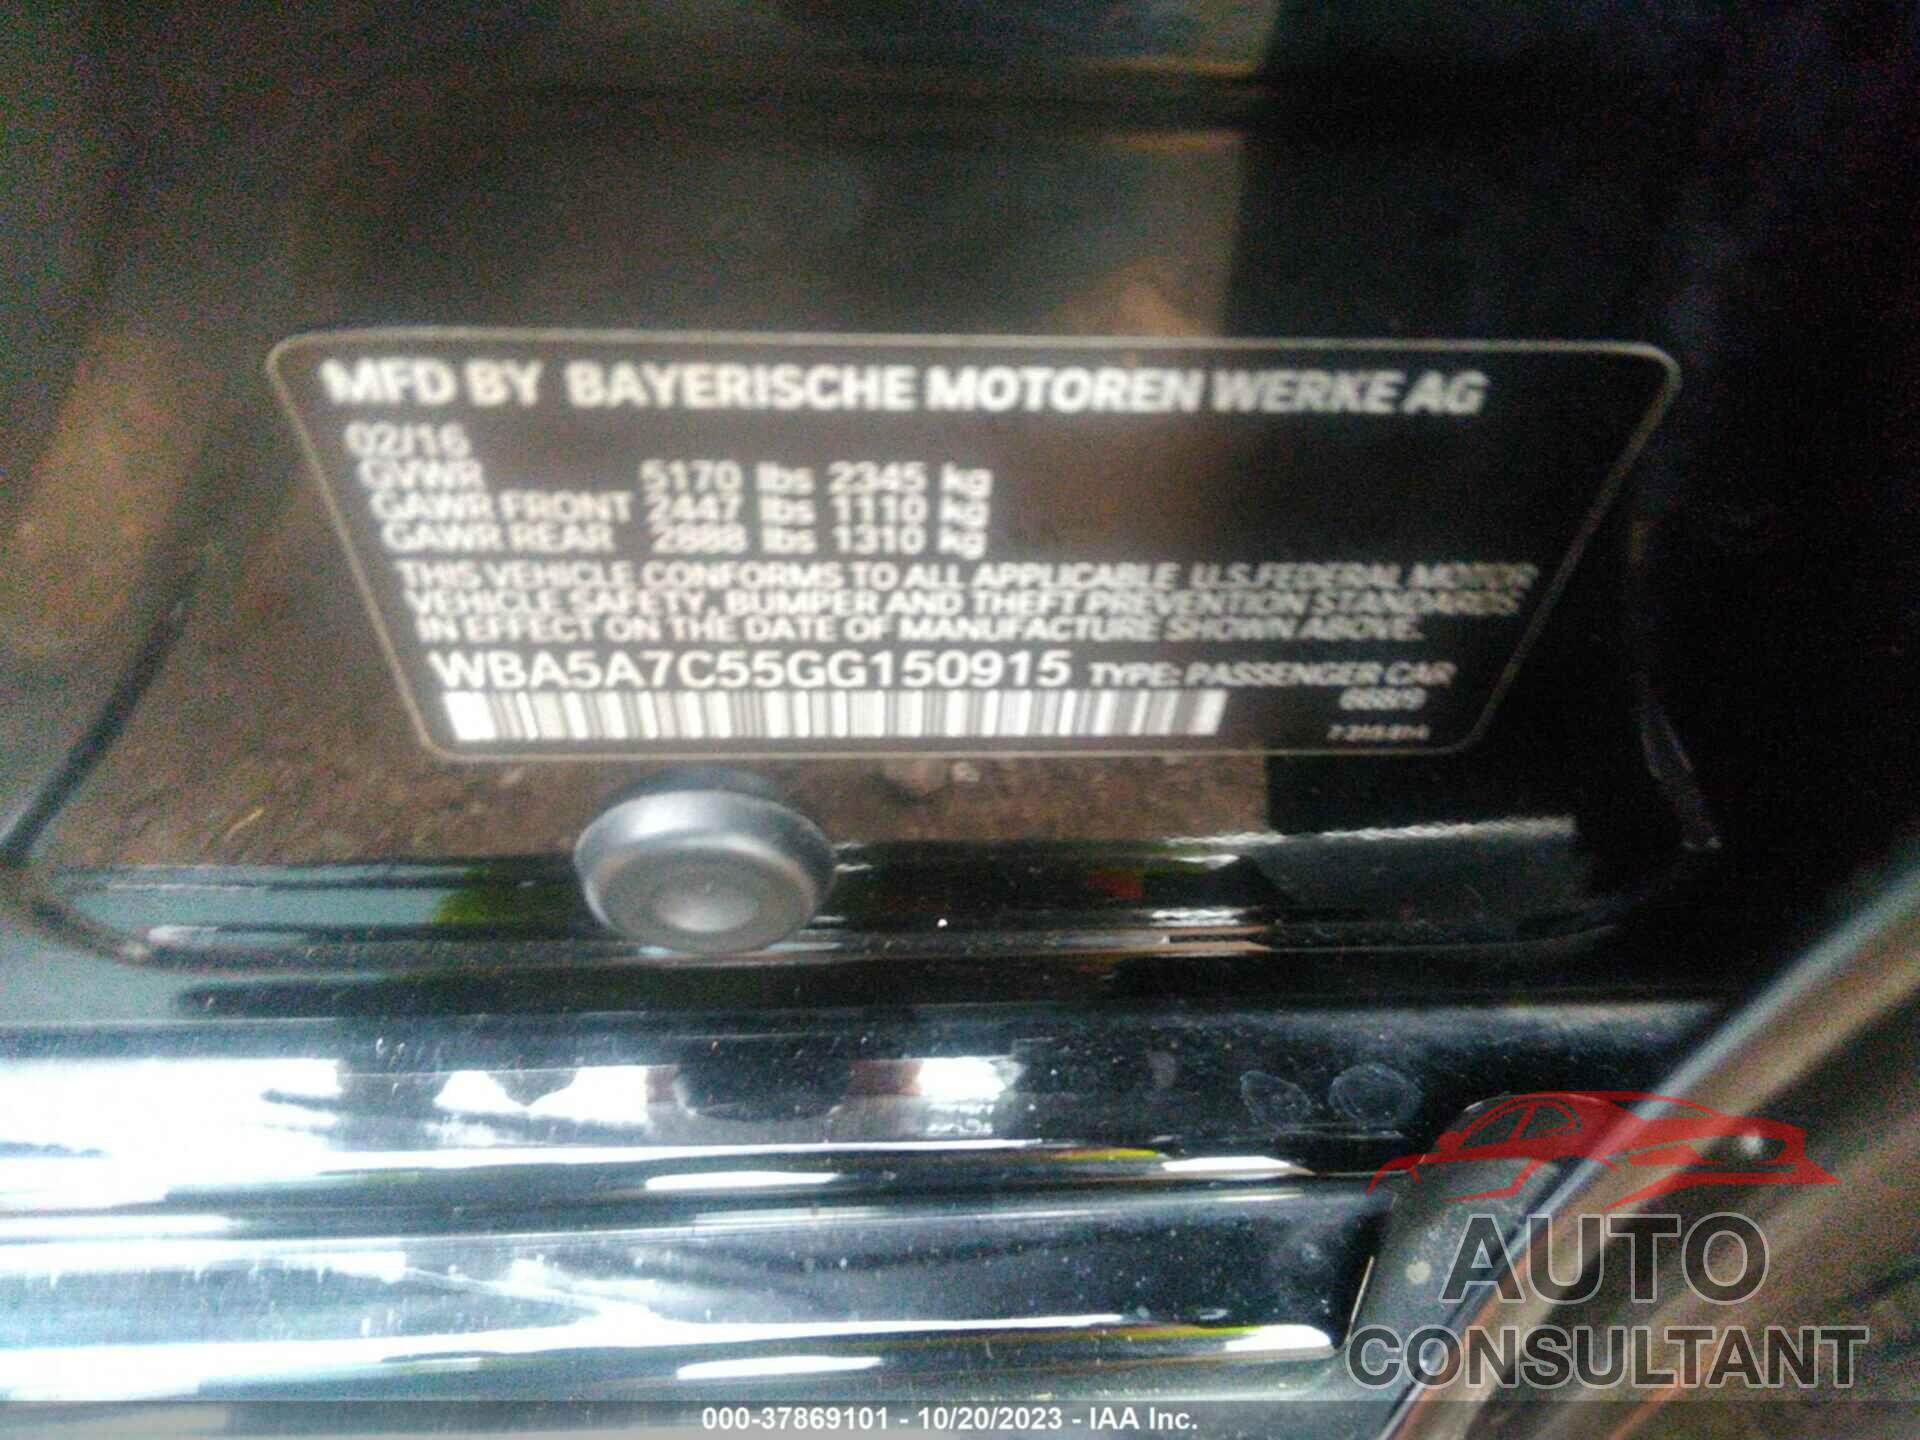 BMW 528I 2016 - WBA5A7C55GG150915